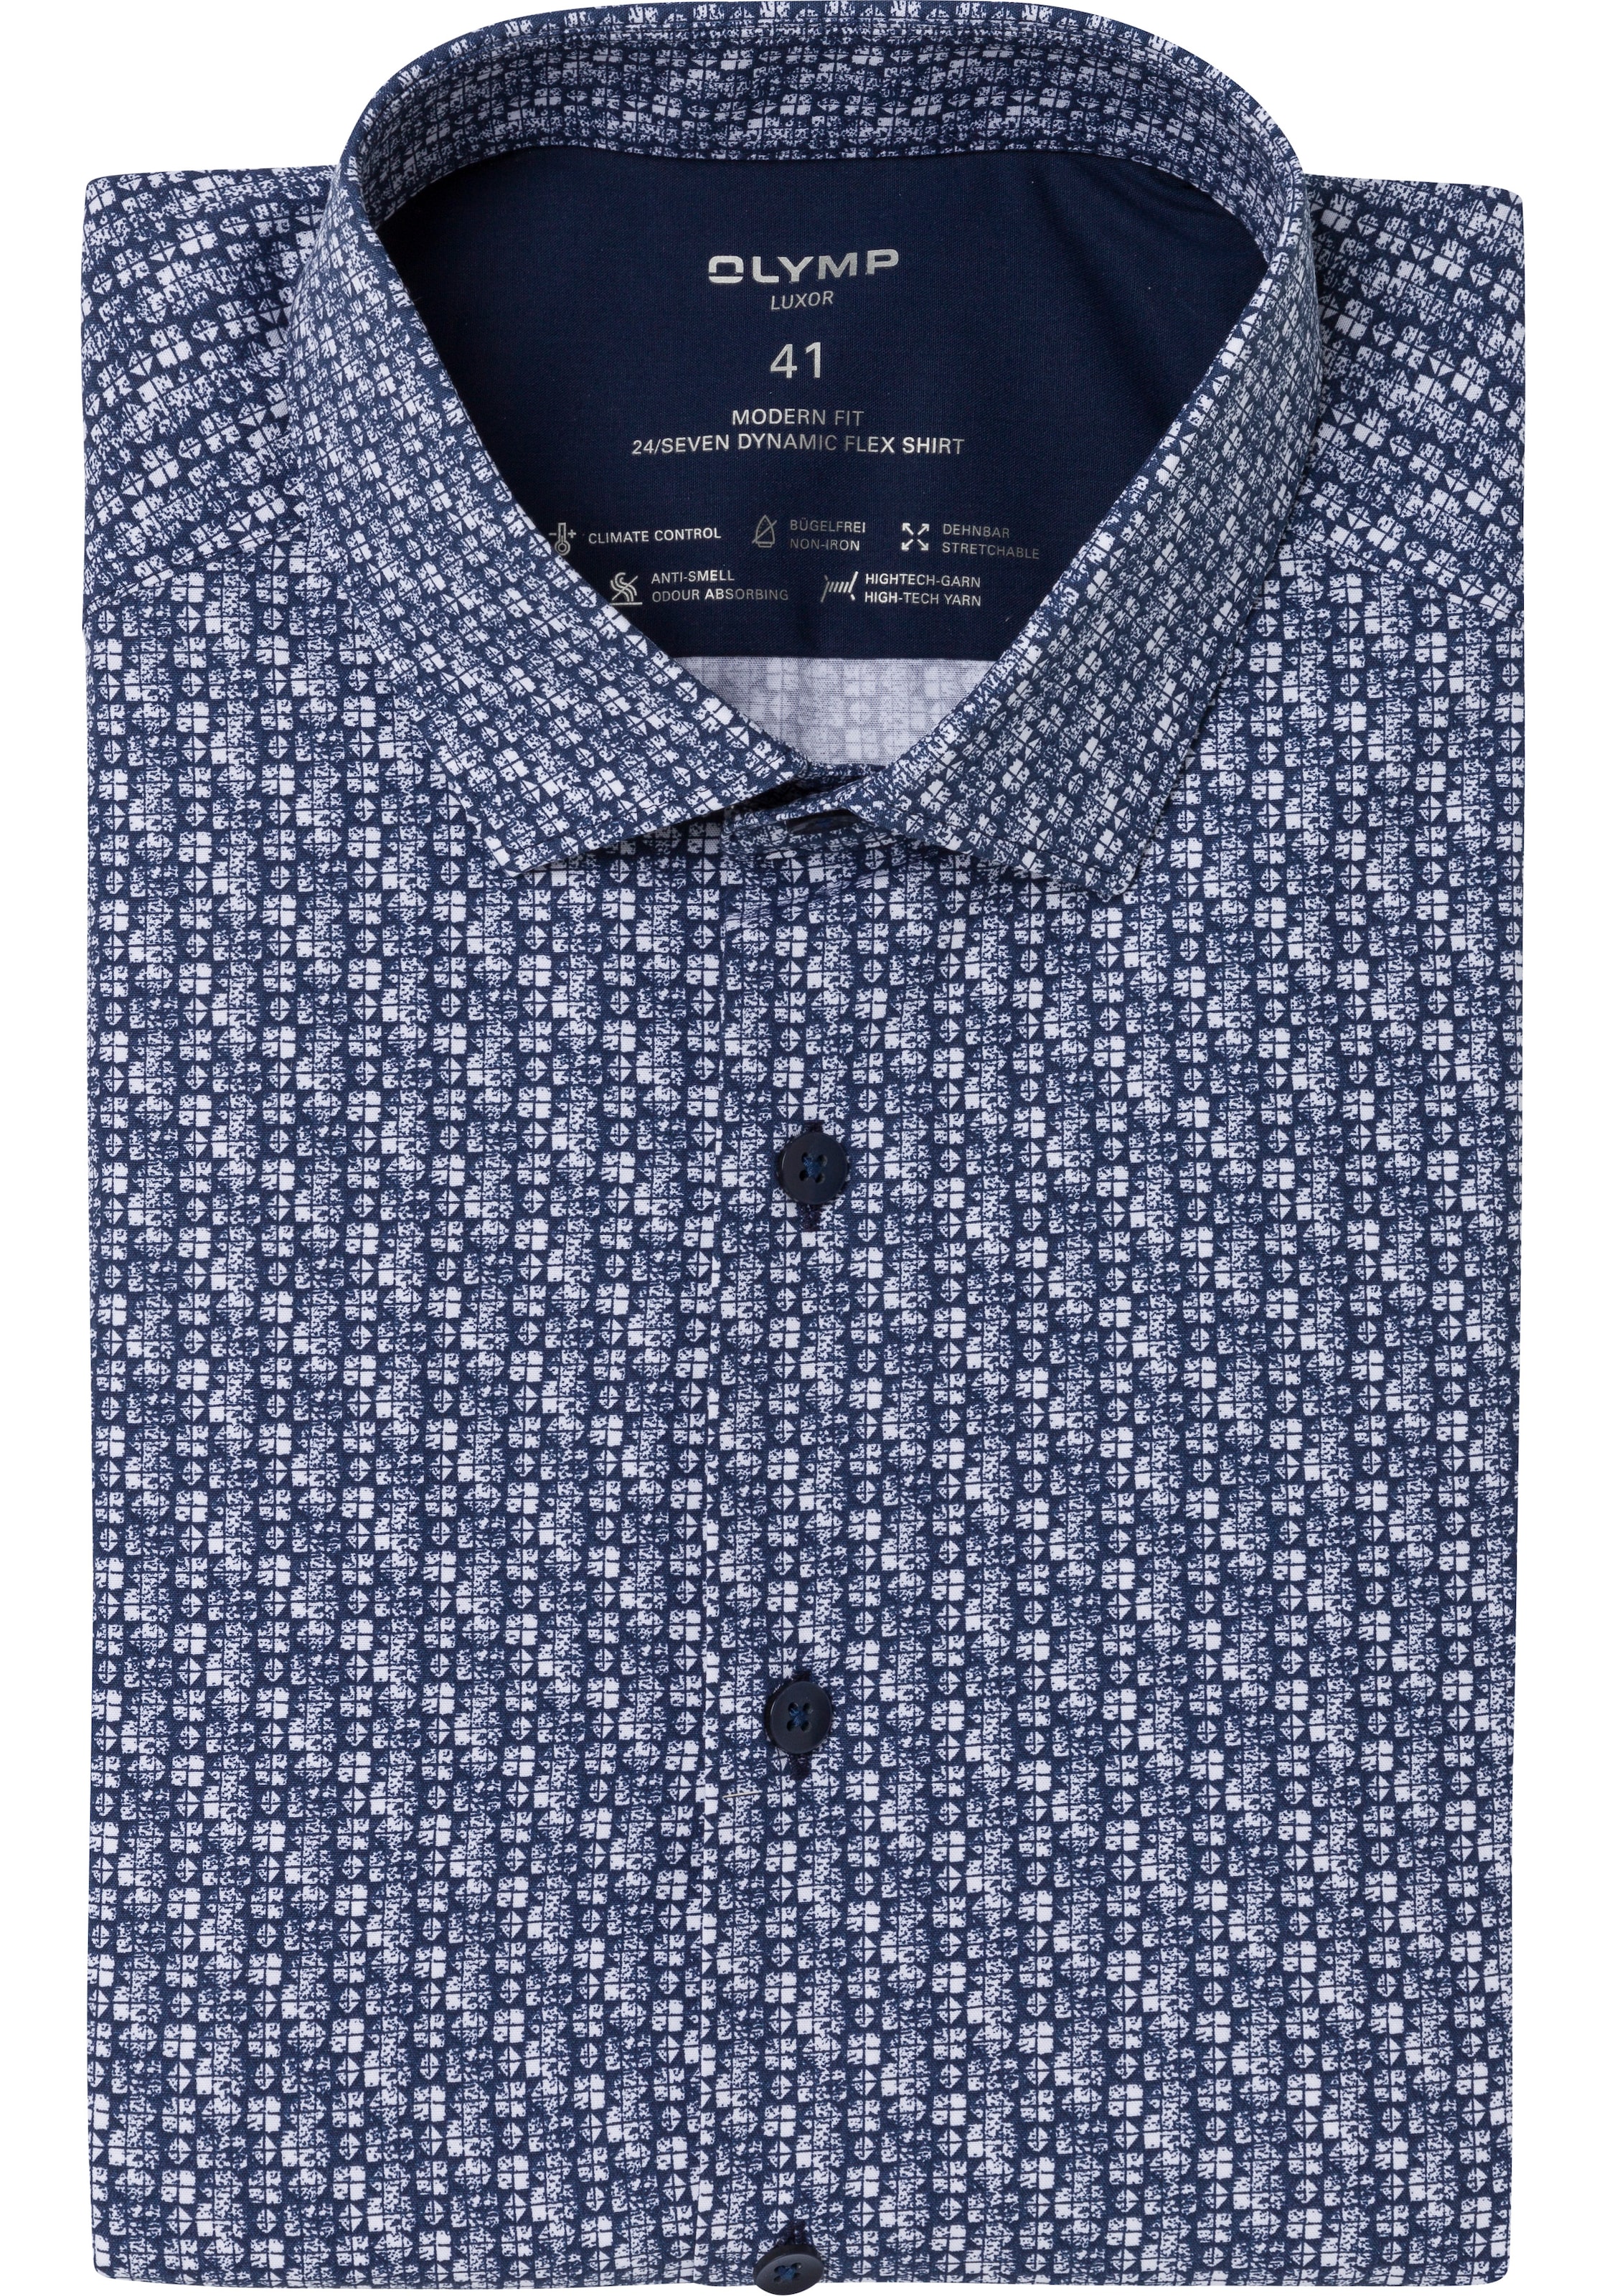 OLYMP Kurzarmhemd, in 24/7 Dynamic Flex Quality ▷ kaufen | BAUR